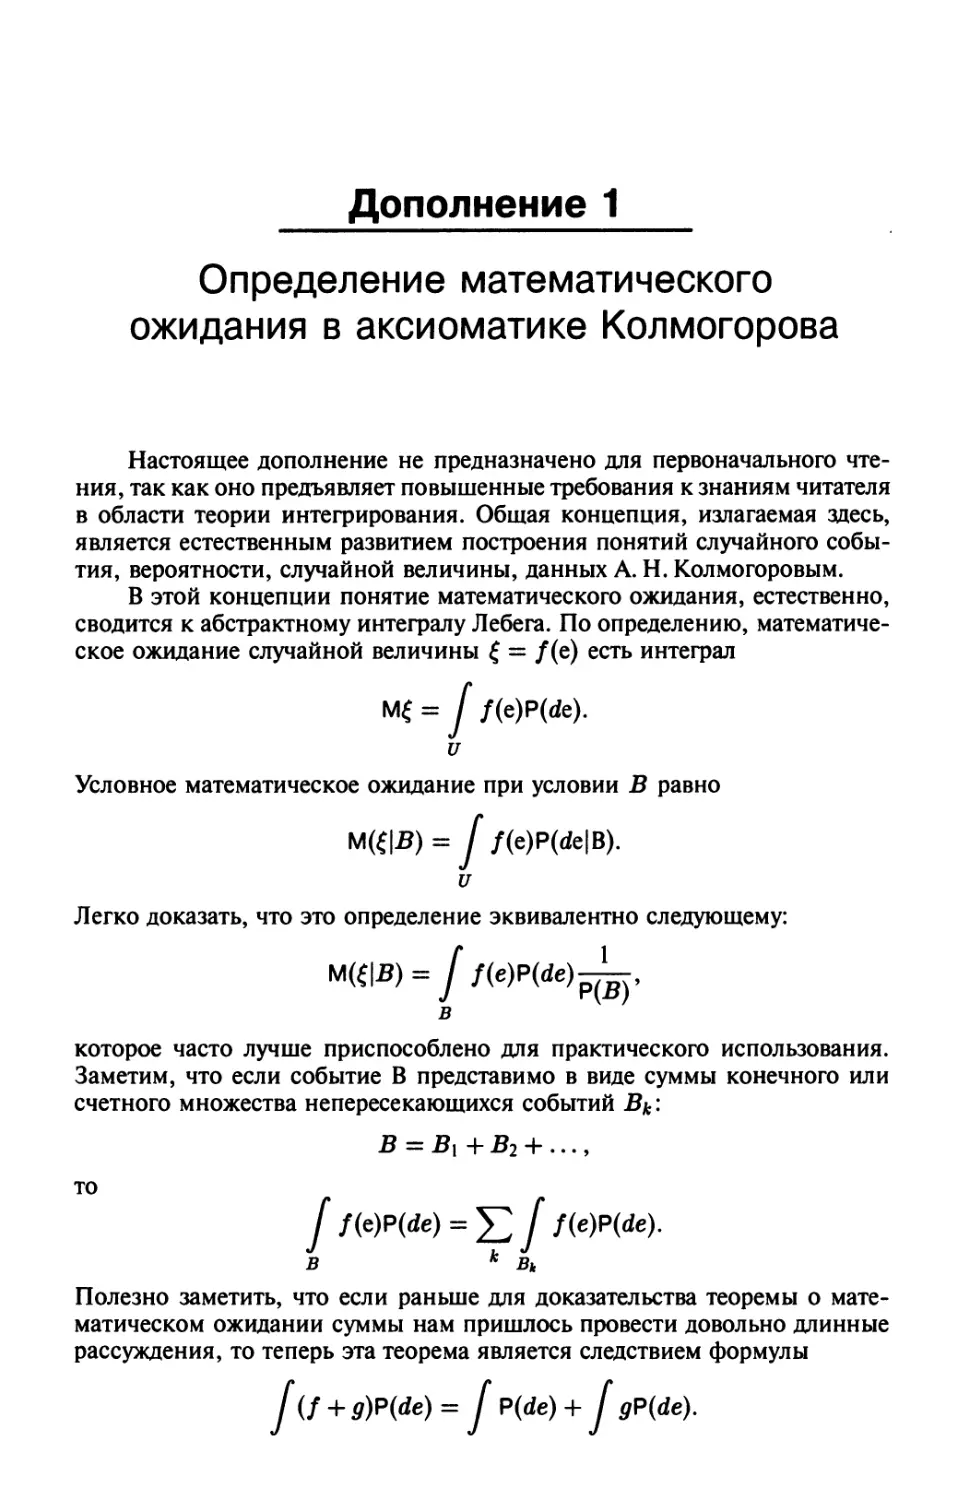 Дополнение 1. Определение математического ожидания в аксиоматике Колмогорова